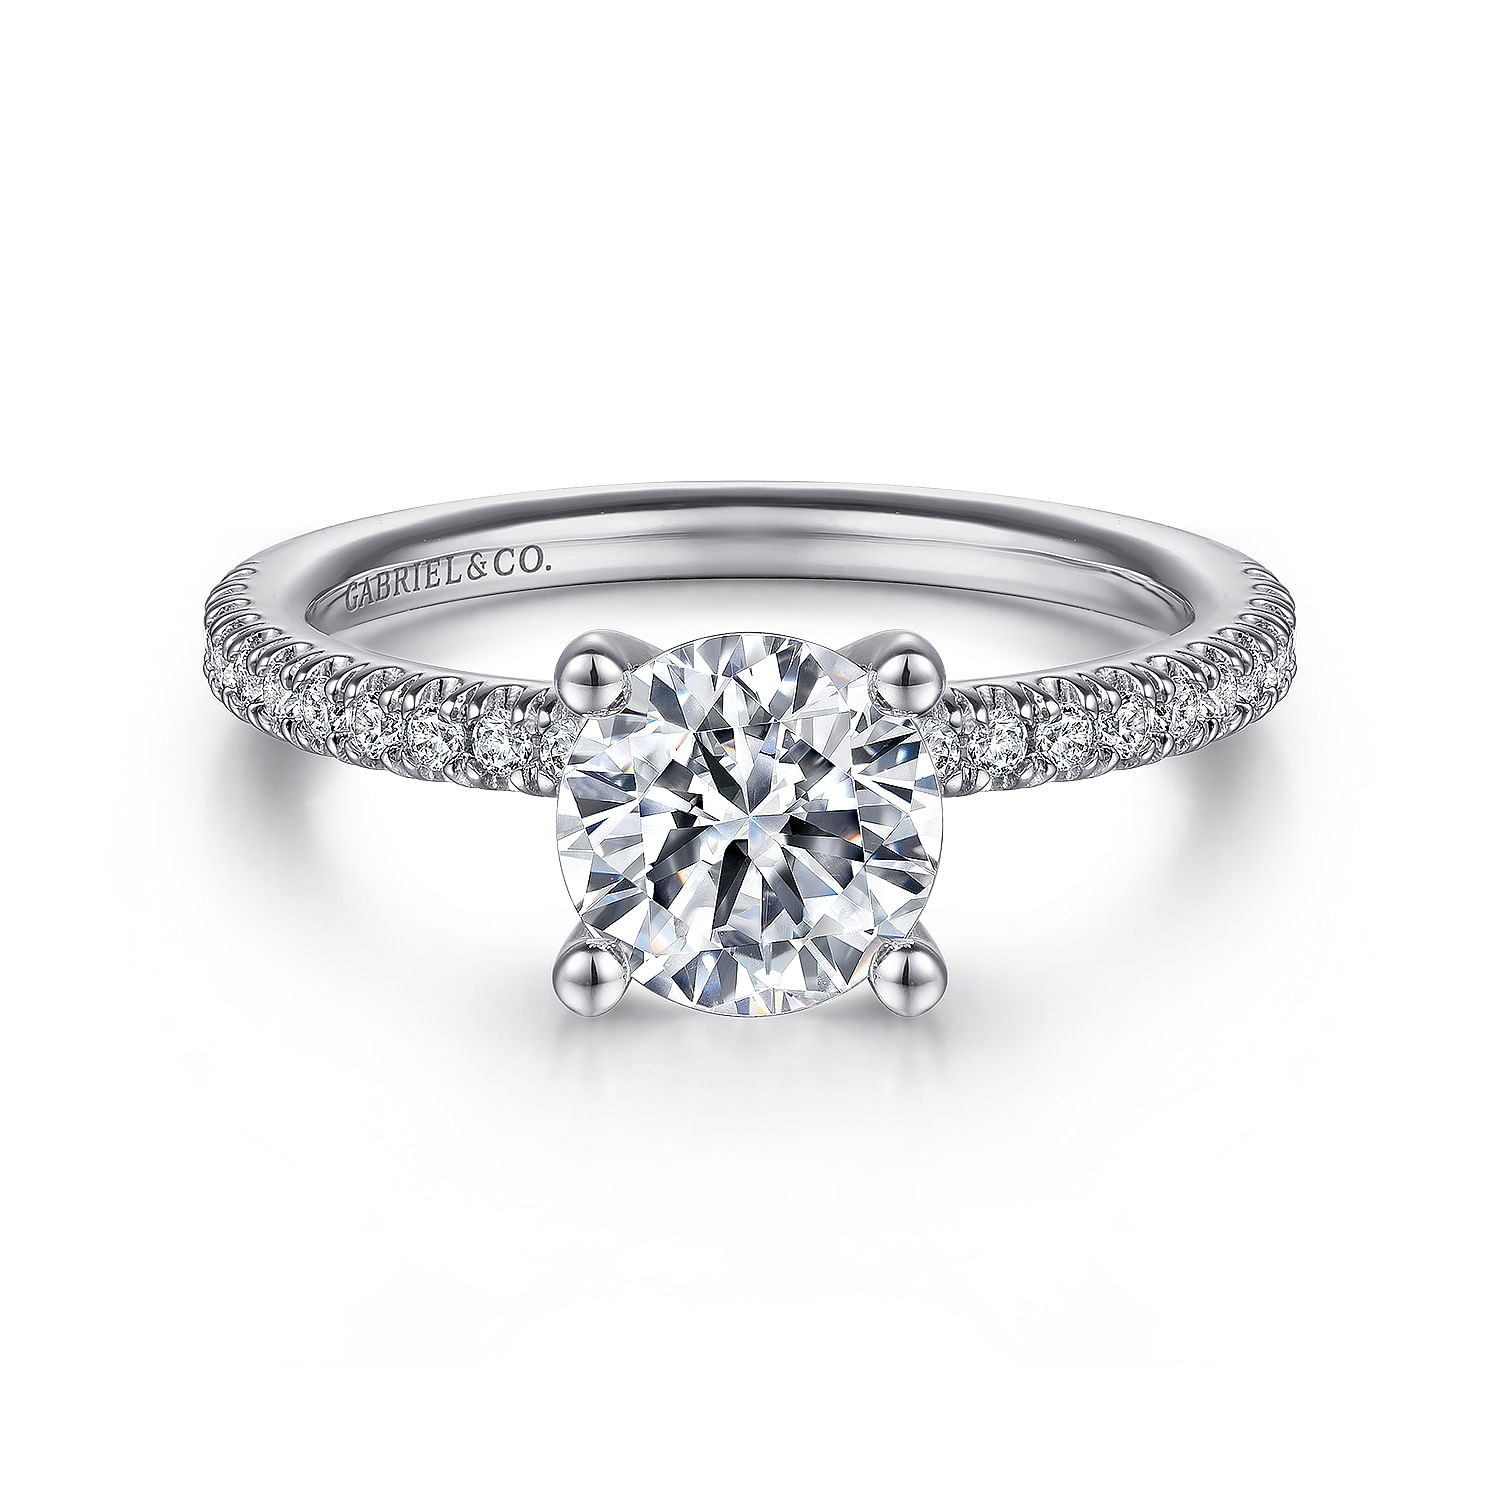 Serenity - 14K White Gold Round Diamond Engagement Ring